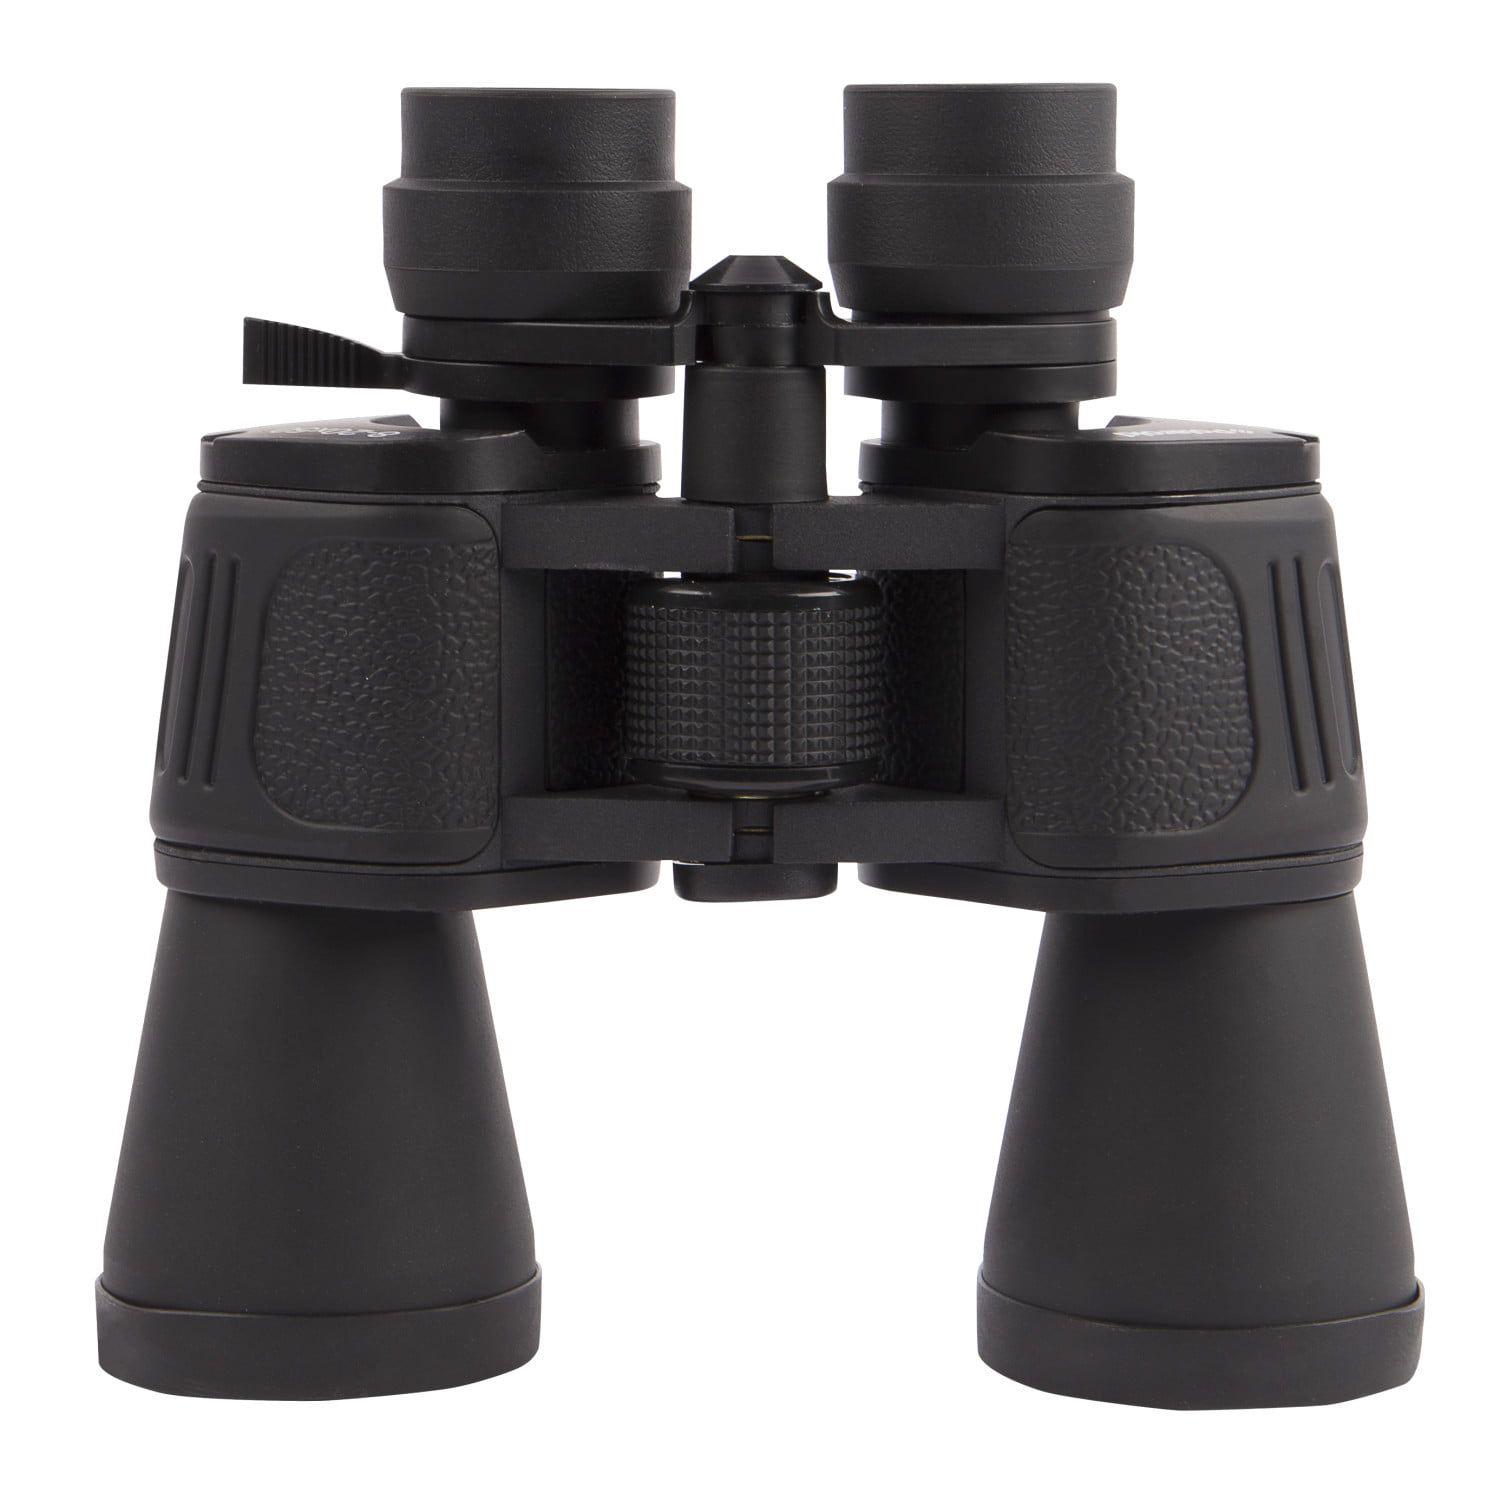 binoculars 20 x 50